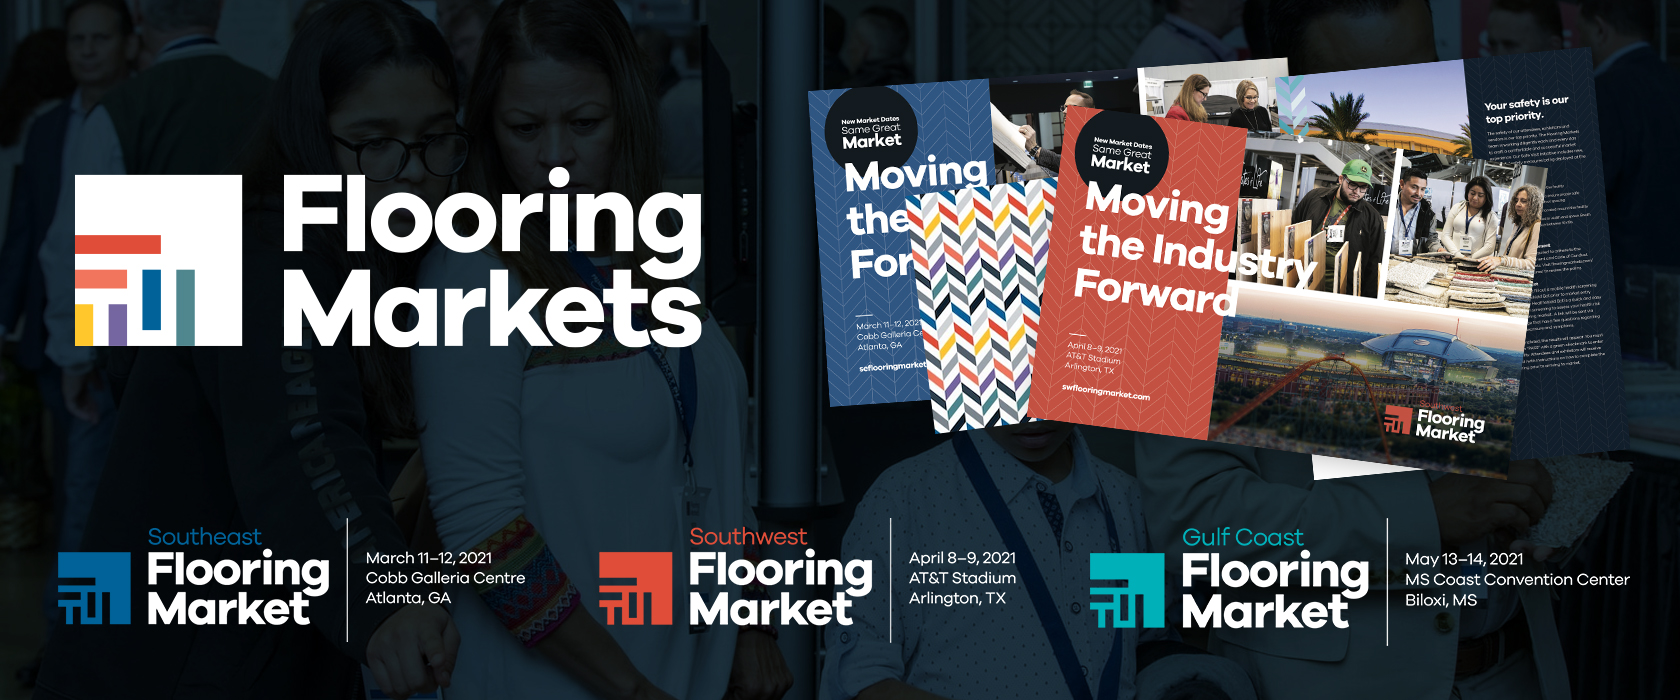 Flooring Markets MMEP